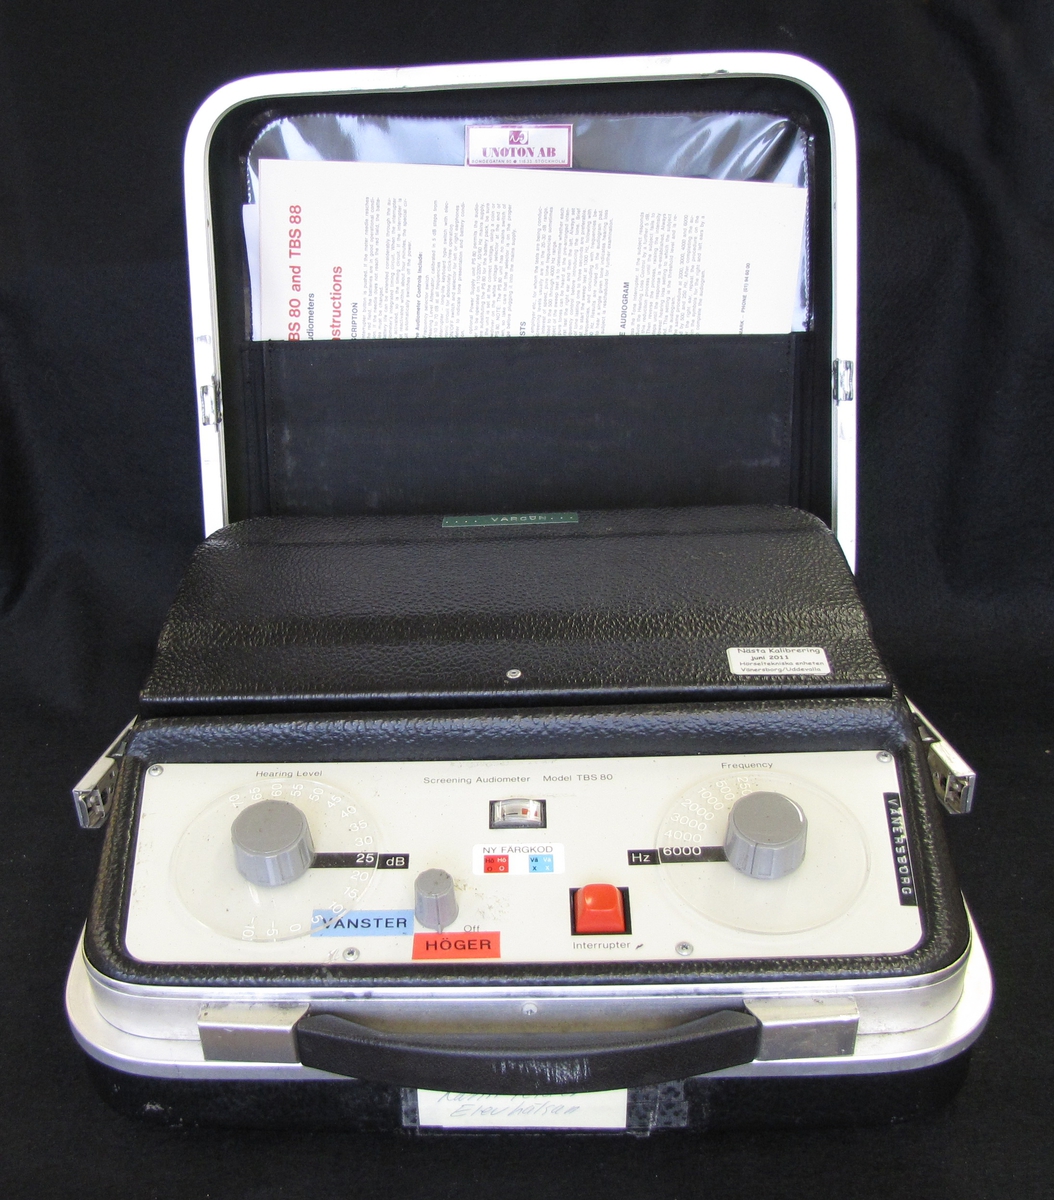 Audiometer för hörselkontroll.

Föremålet ingår i en samling med föremål som använt av skolsköterskorna i Vänersborg genom åren.